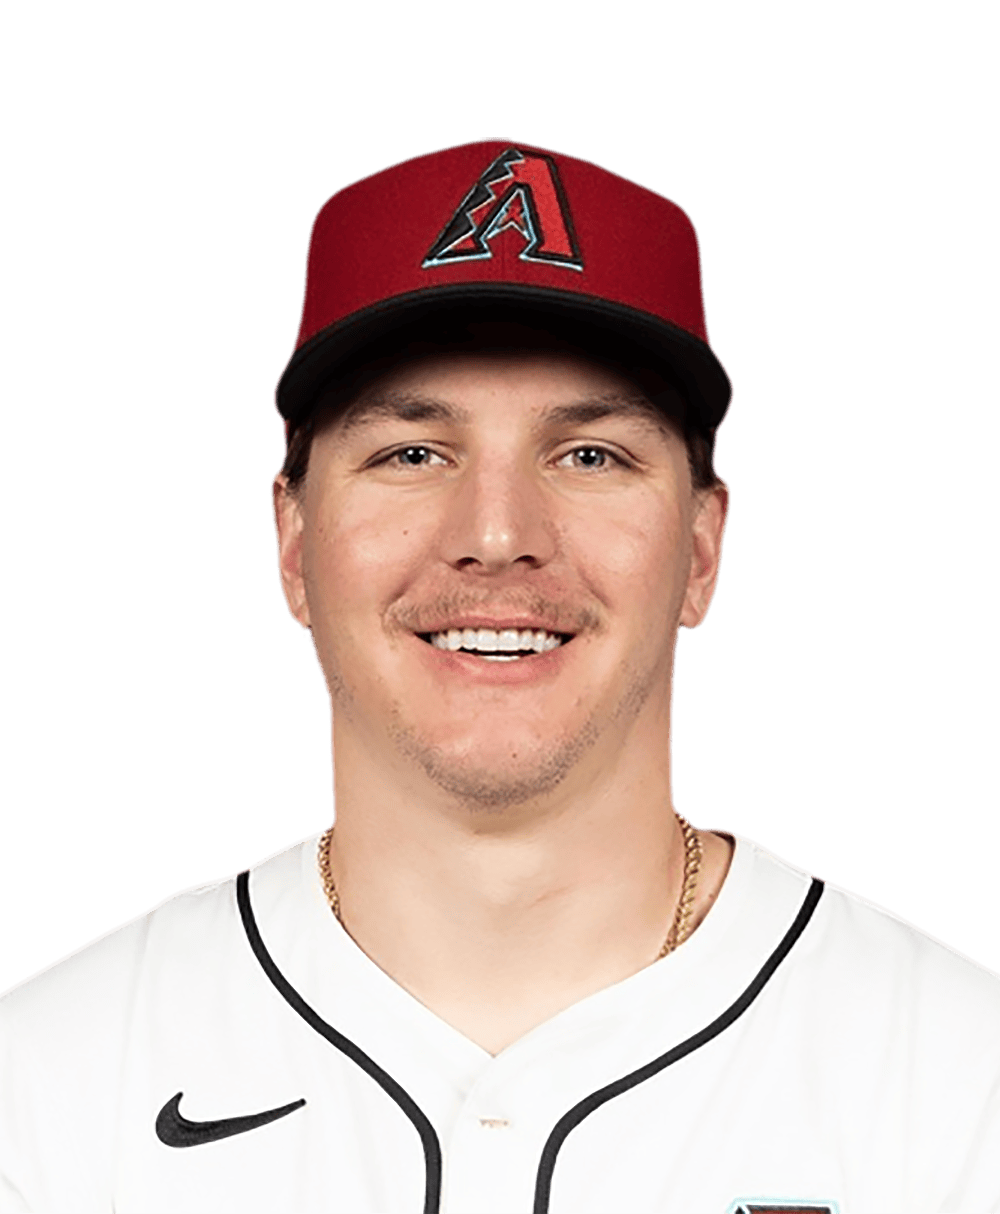 Jake McCarthy - MLB News, Rumors, & Updates